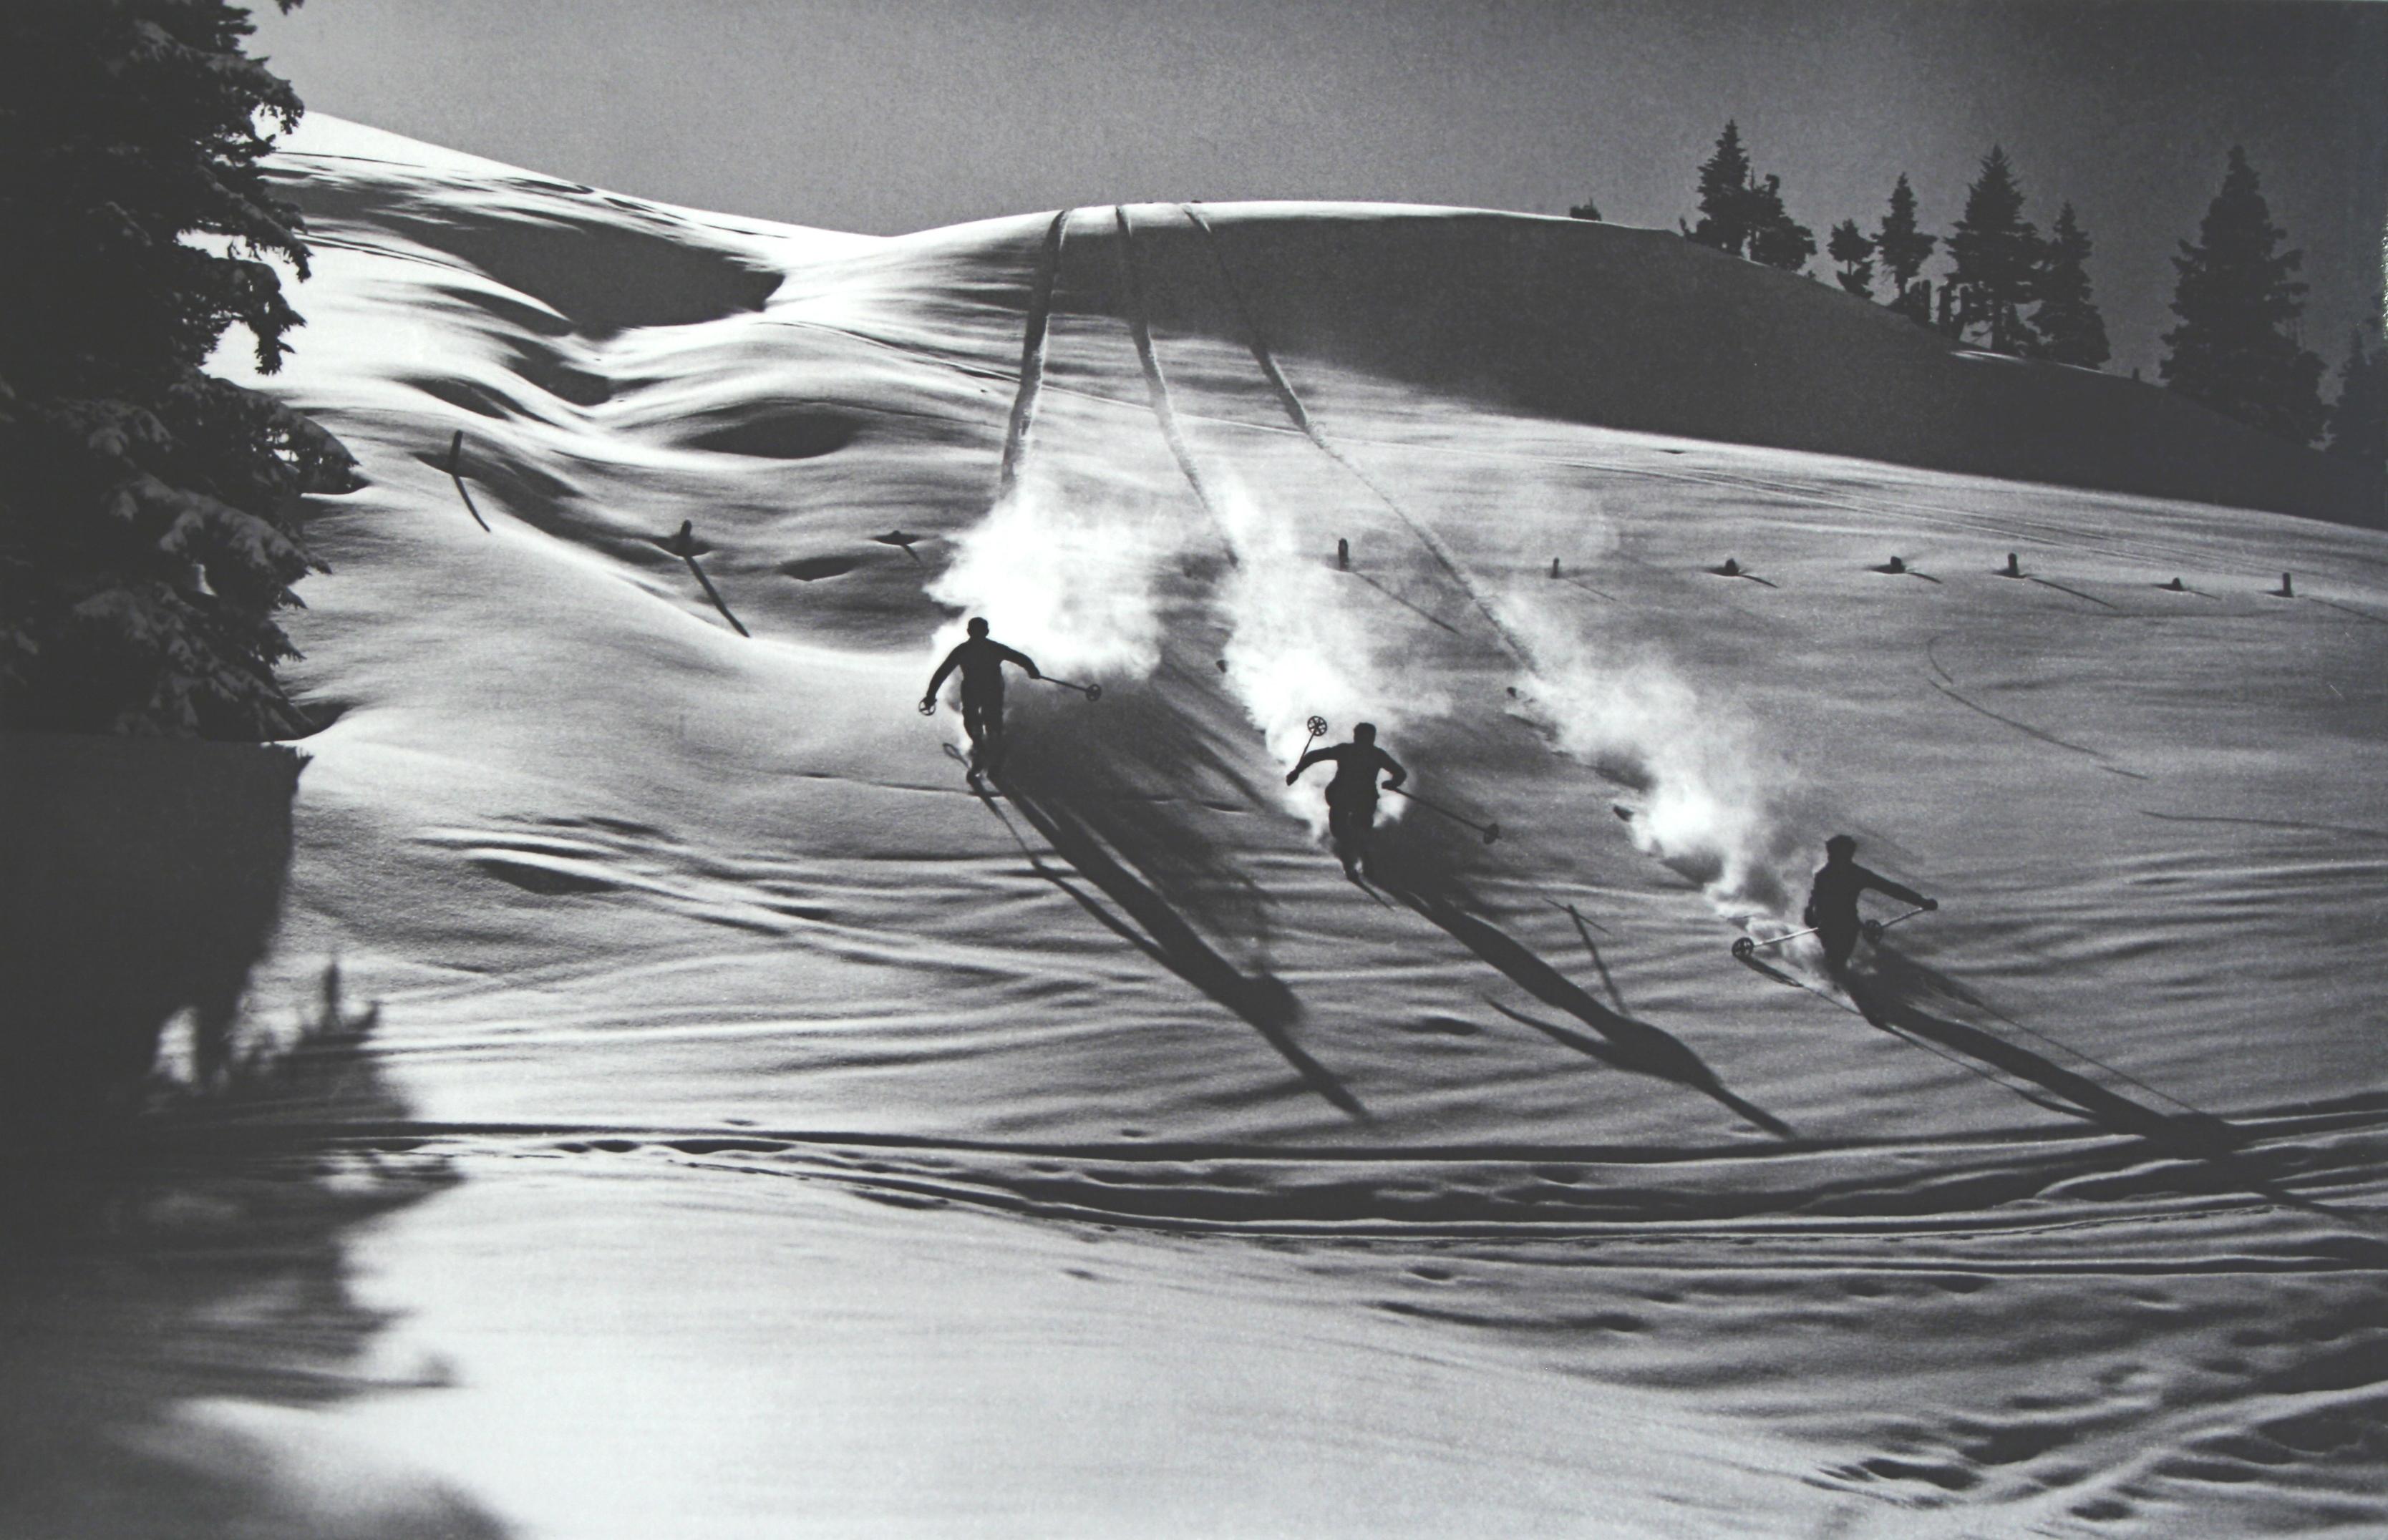 Fotografía de Esquí Vintage, Fotografía antigua de Esquí Alpino.
Descenso en polvo